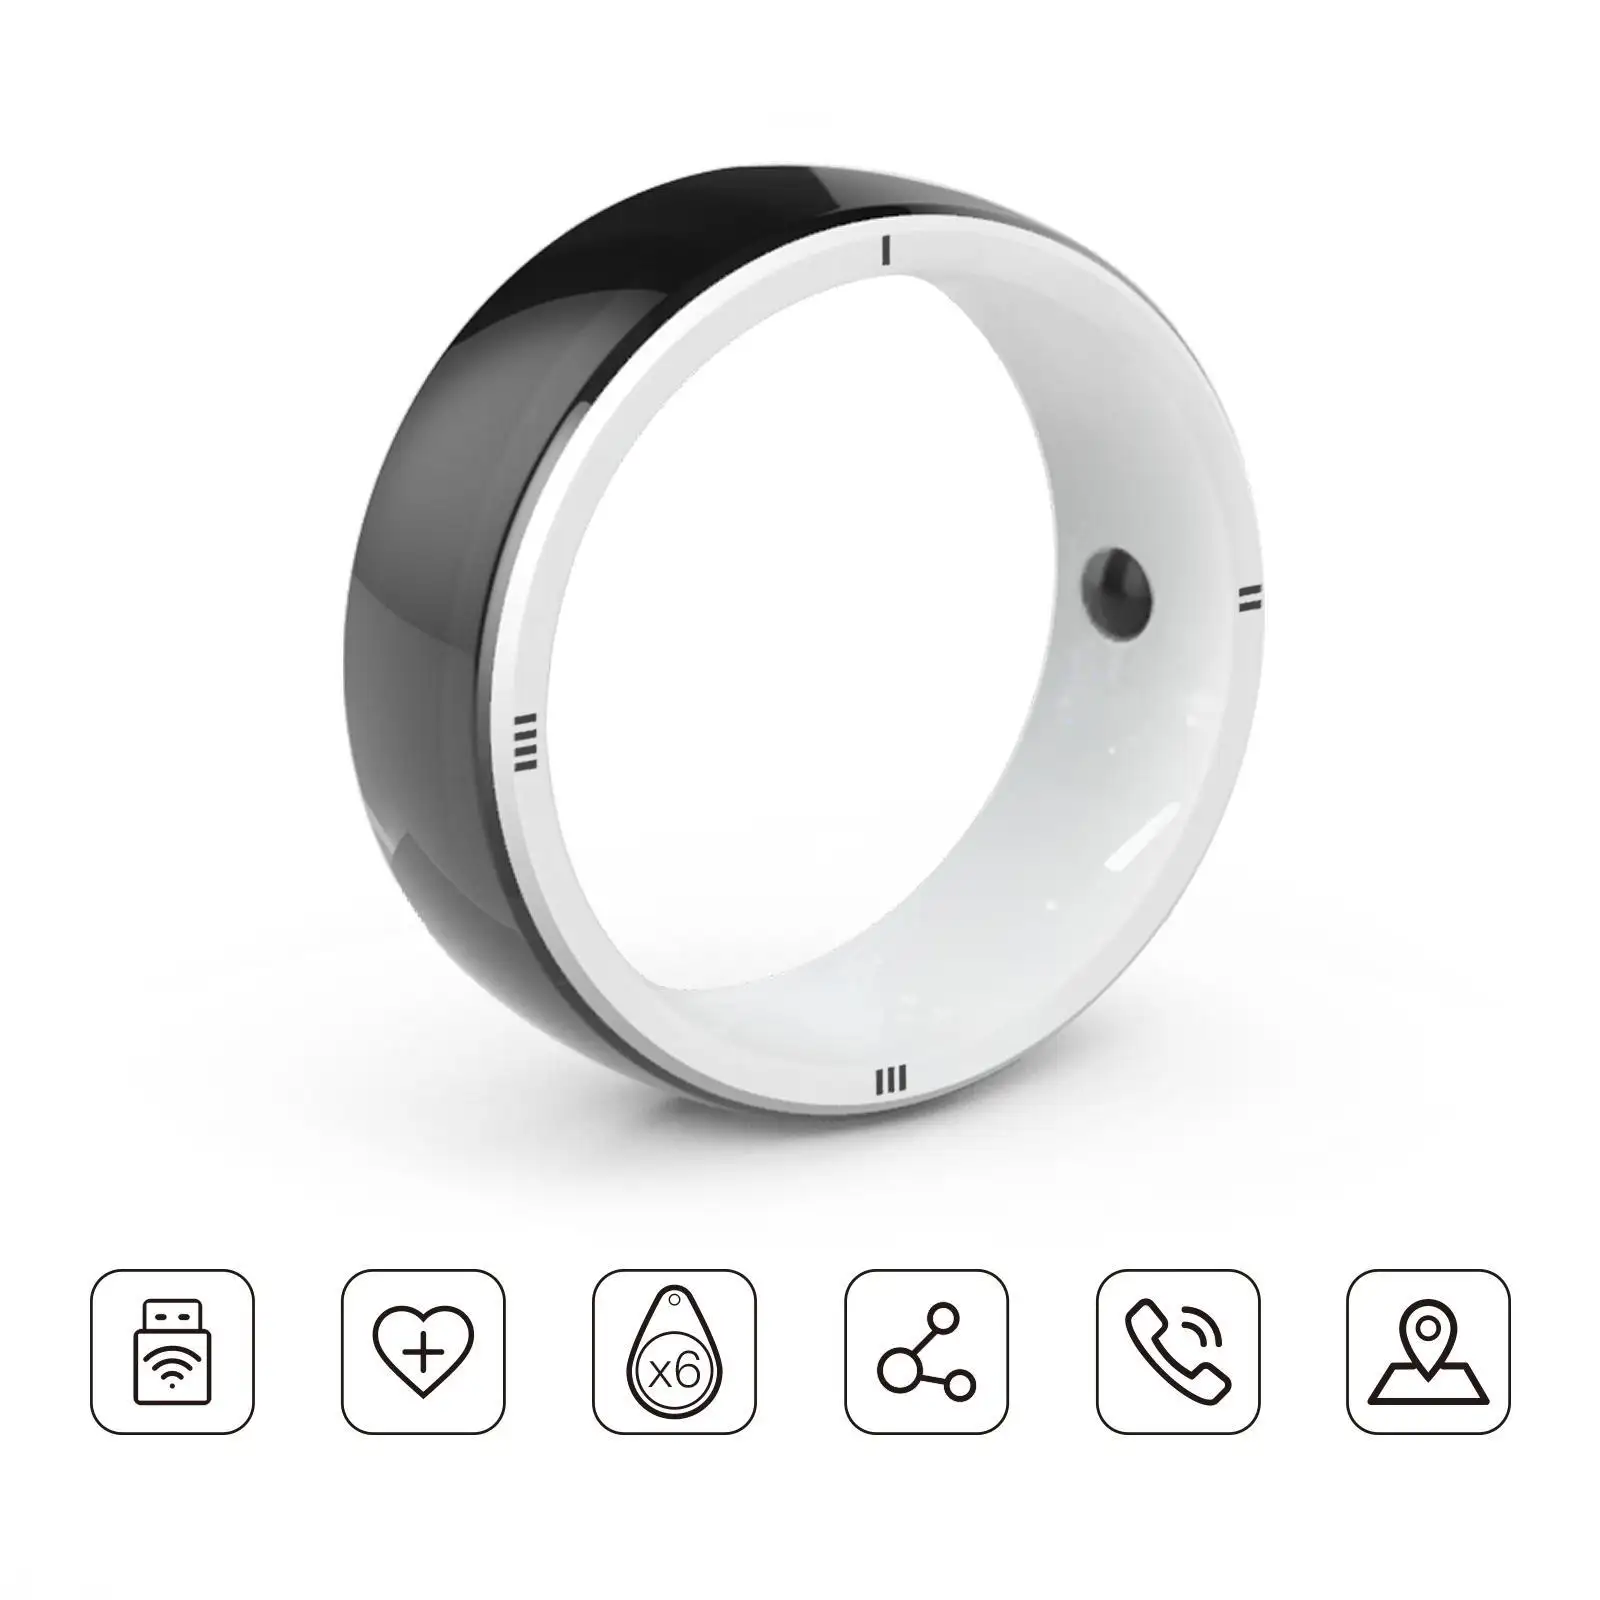 JAKCOM R5 cincin pintar baru cincin pintar bagus dari Terbaik lagu 2019 kissral earbuds 808d 2 baterai qkk proyektor mini Gimnastik dapat dipakai